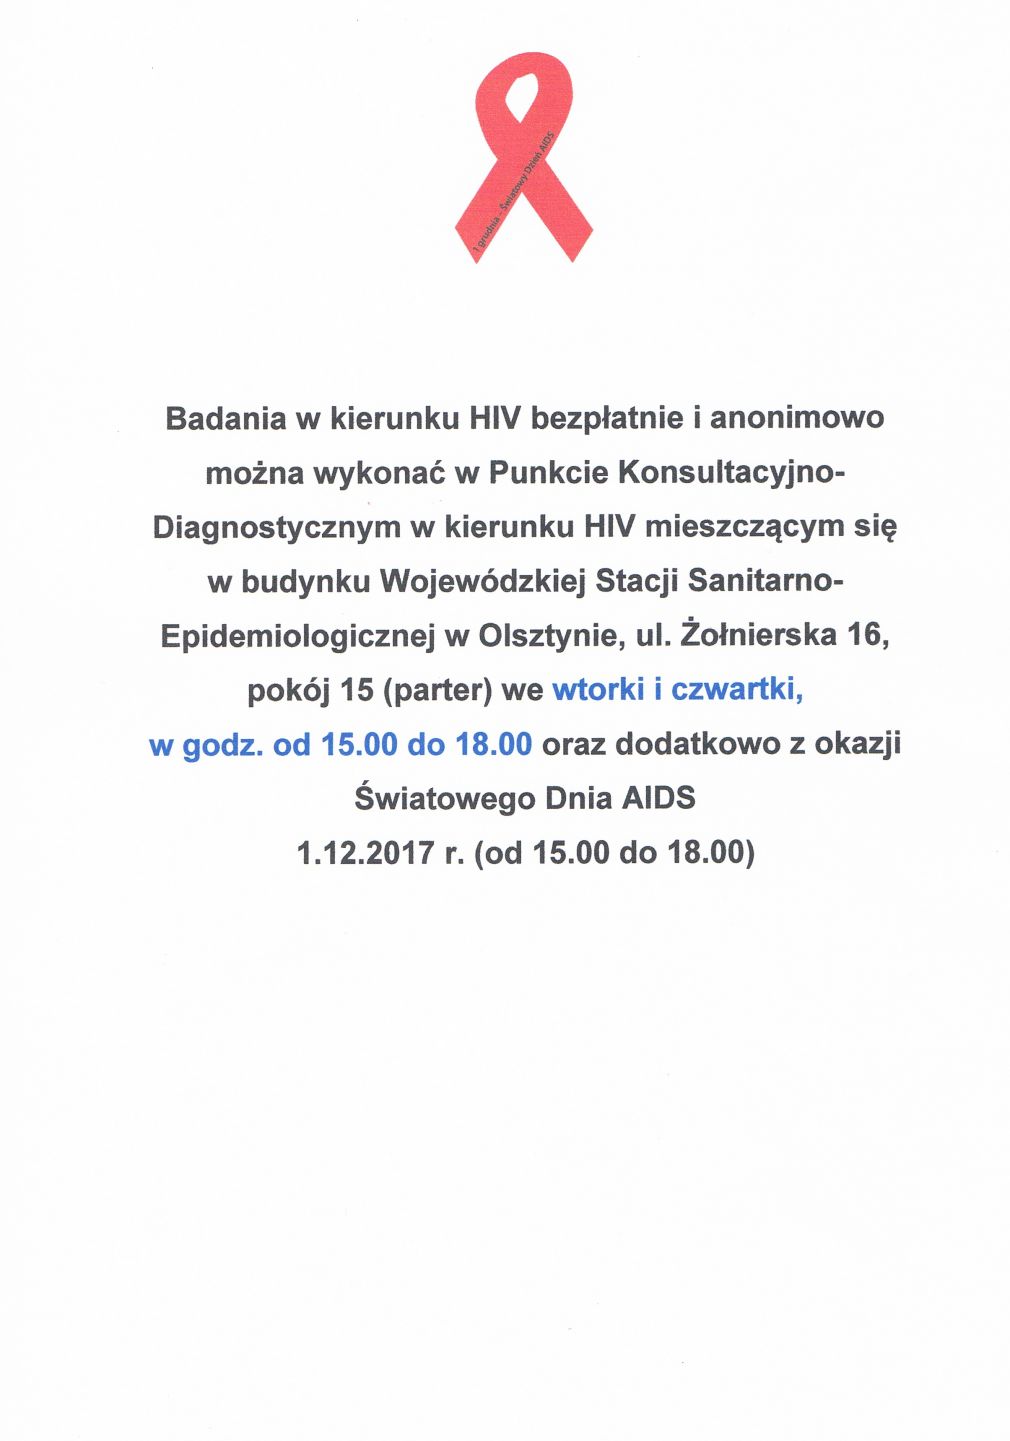 Bezpłatne badania w kierunku HIV